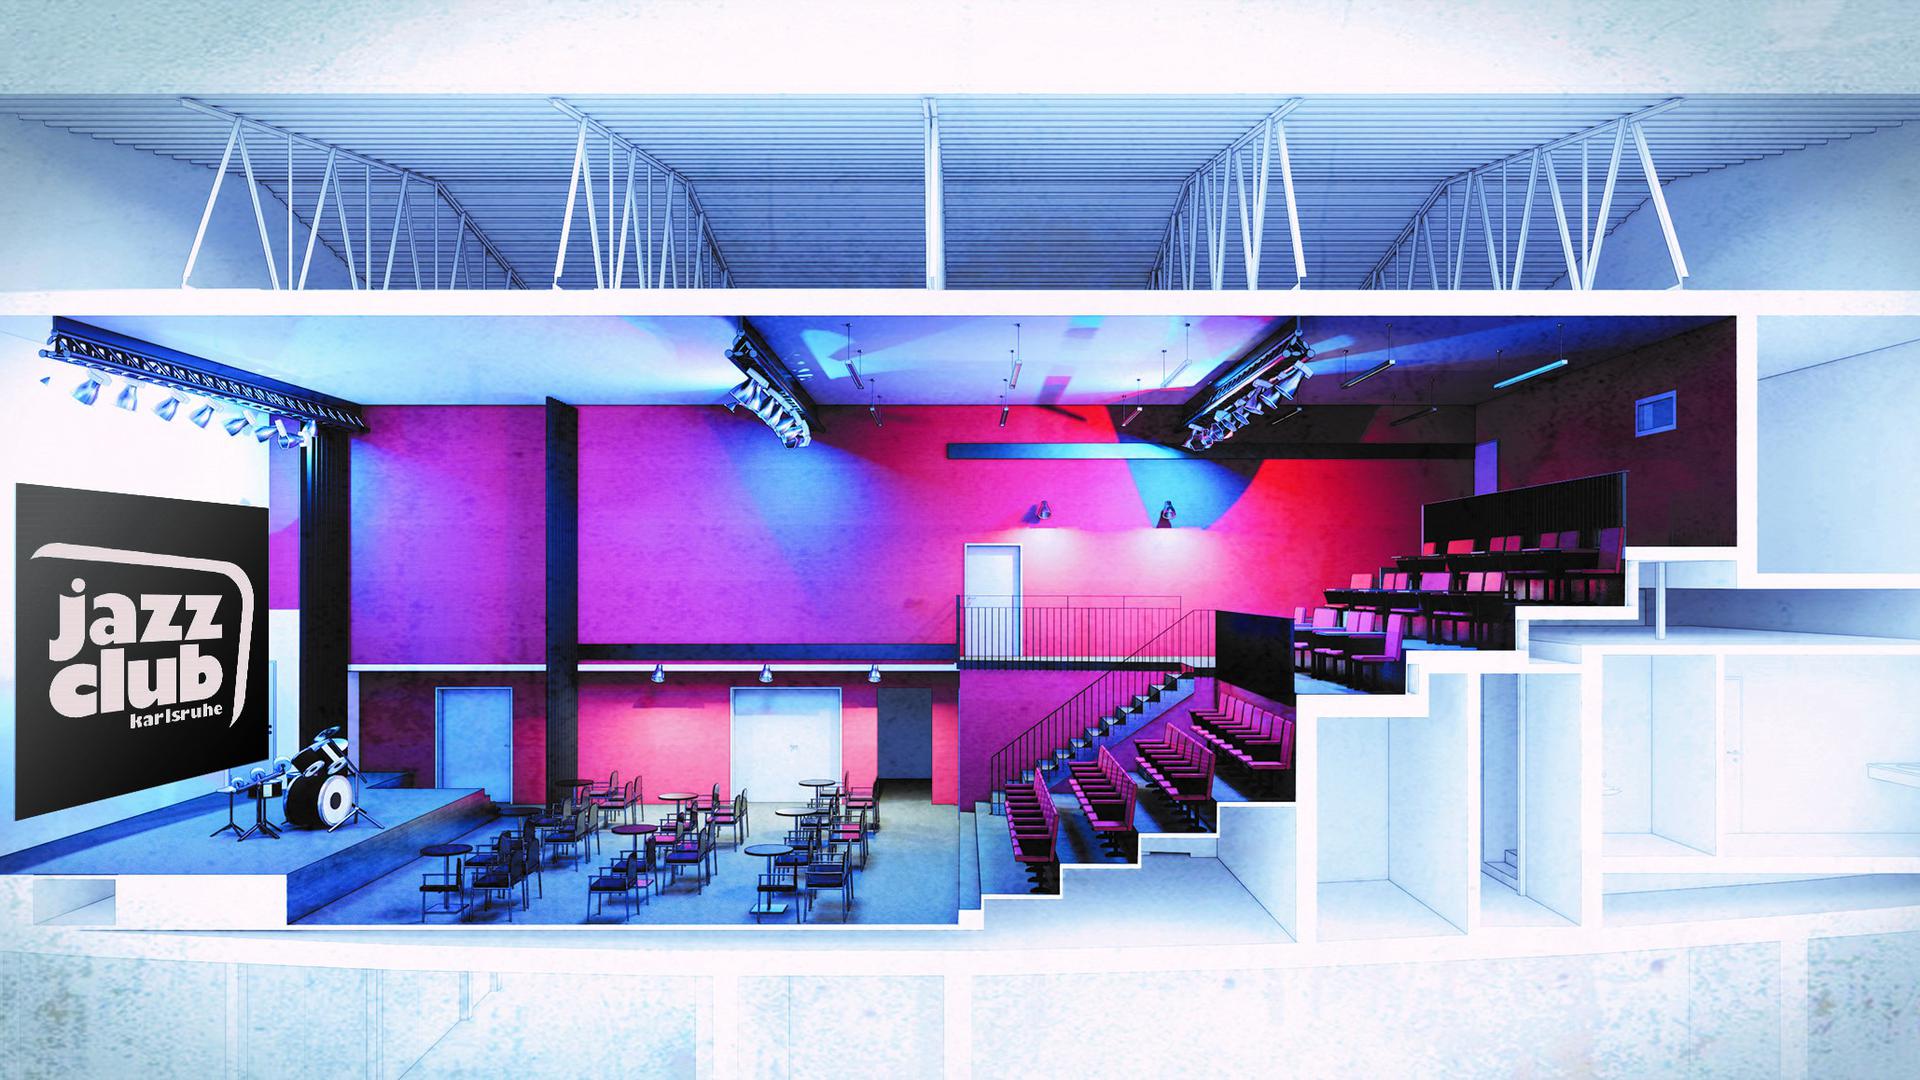 Bildsimulation des Jazzclubs Karlsruhe, wie er bis Frühjahr 2021 im ehemaligen Kino „Kurbel 1“ entstehen soll.